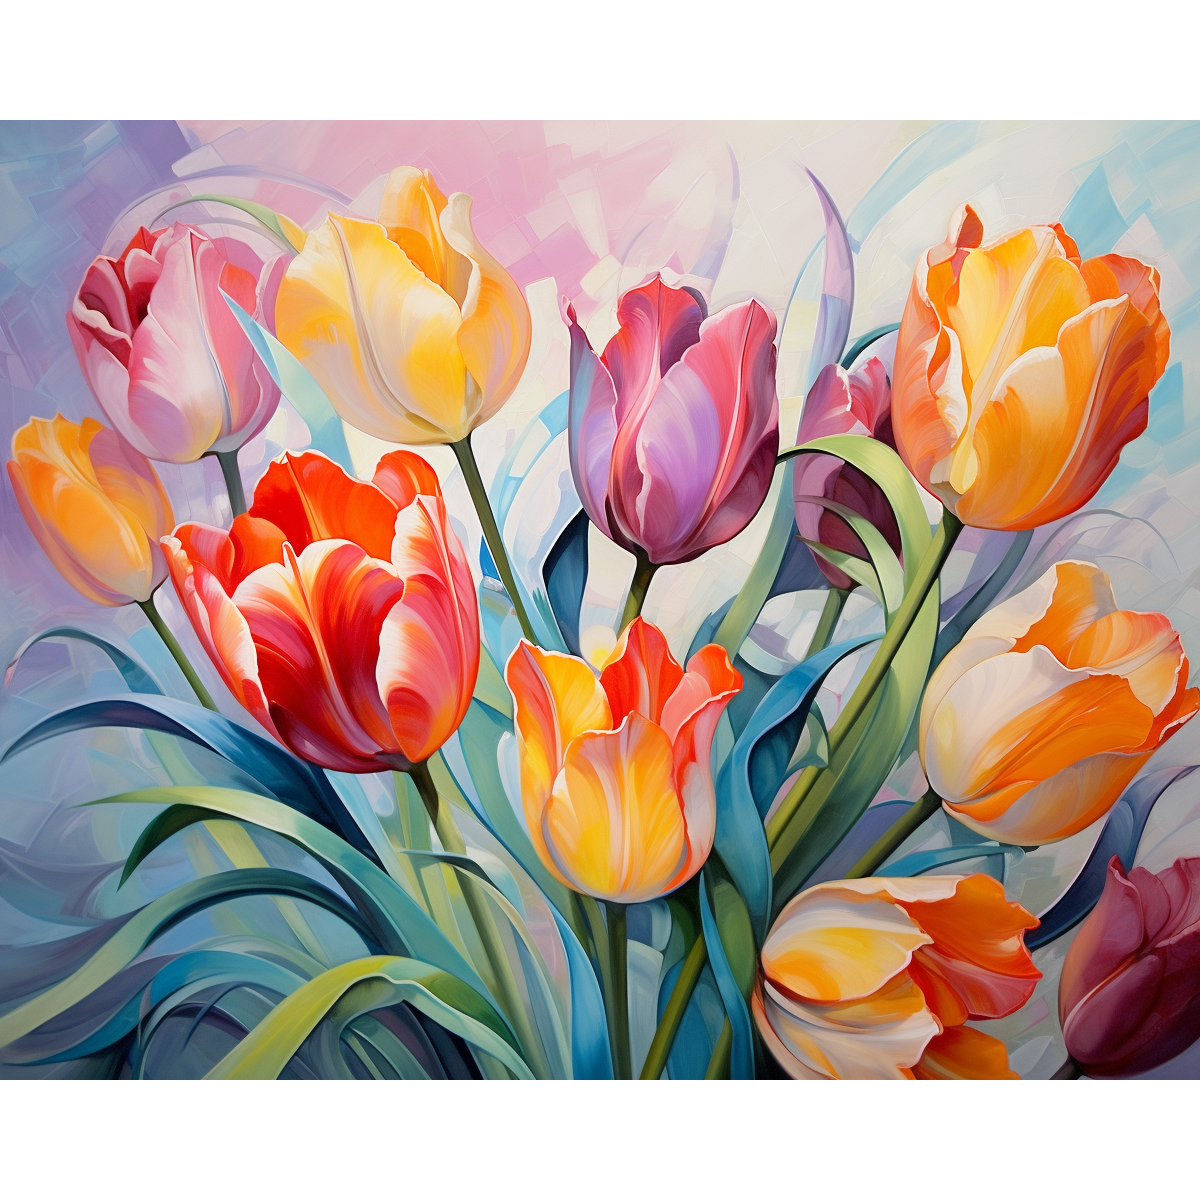 Colorido ramo de tulipanes